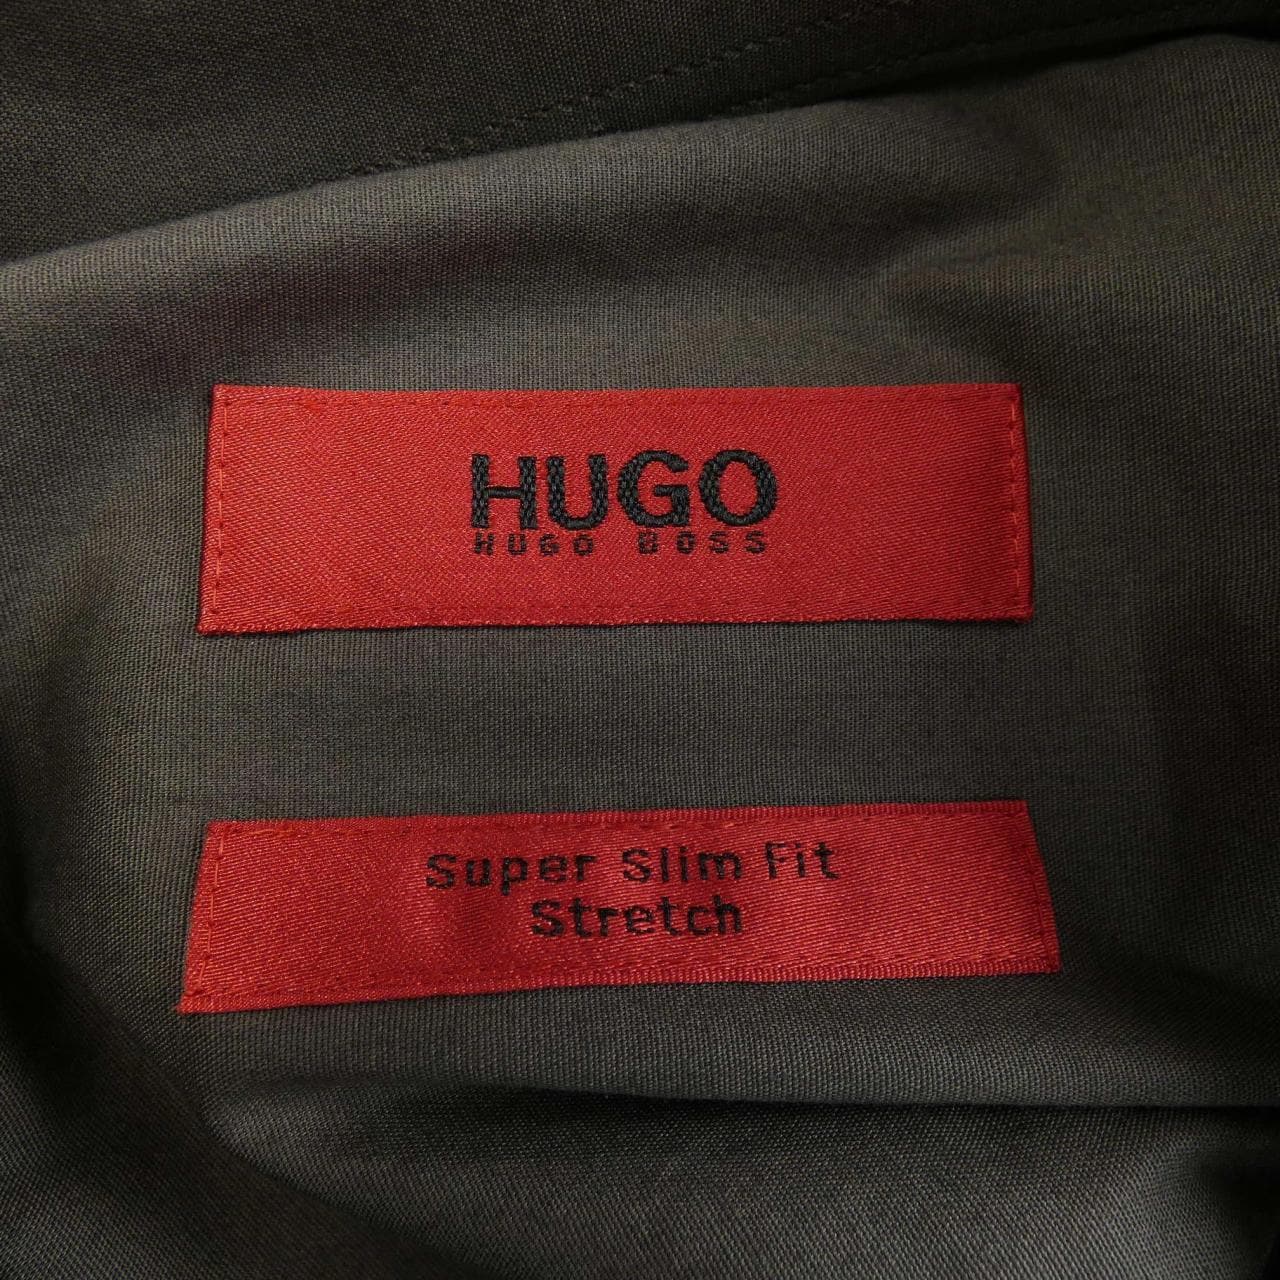 Hugo Boss HUGO BOSS shirt